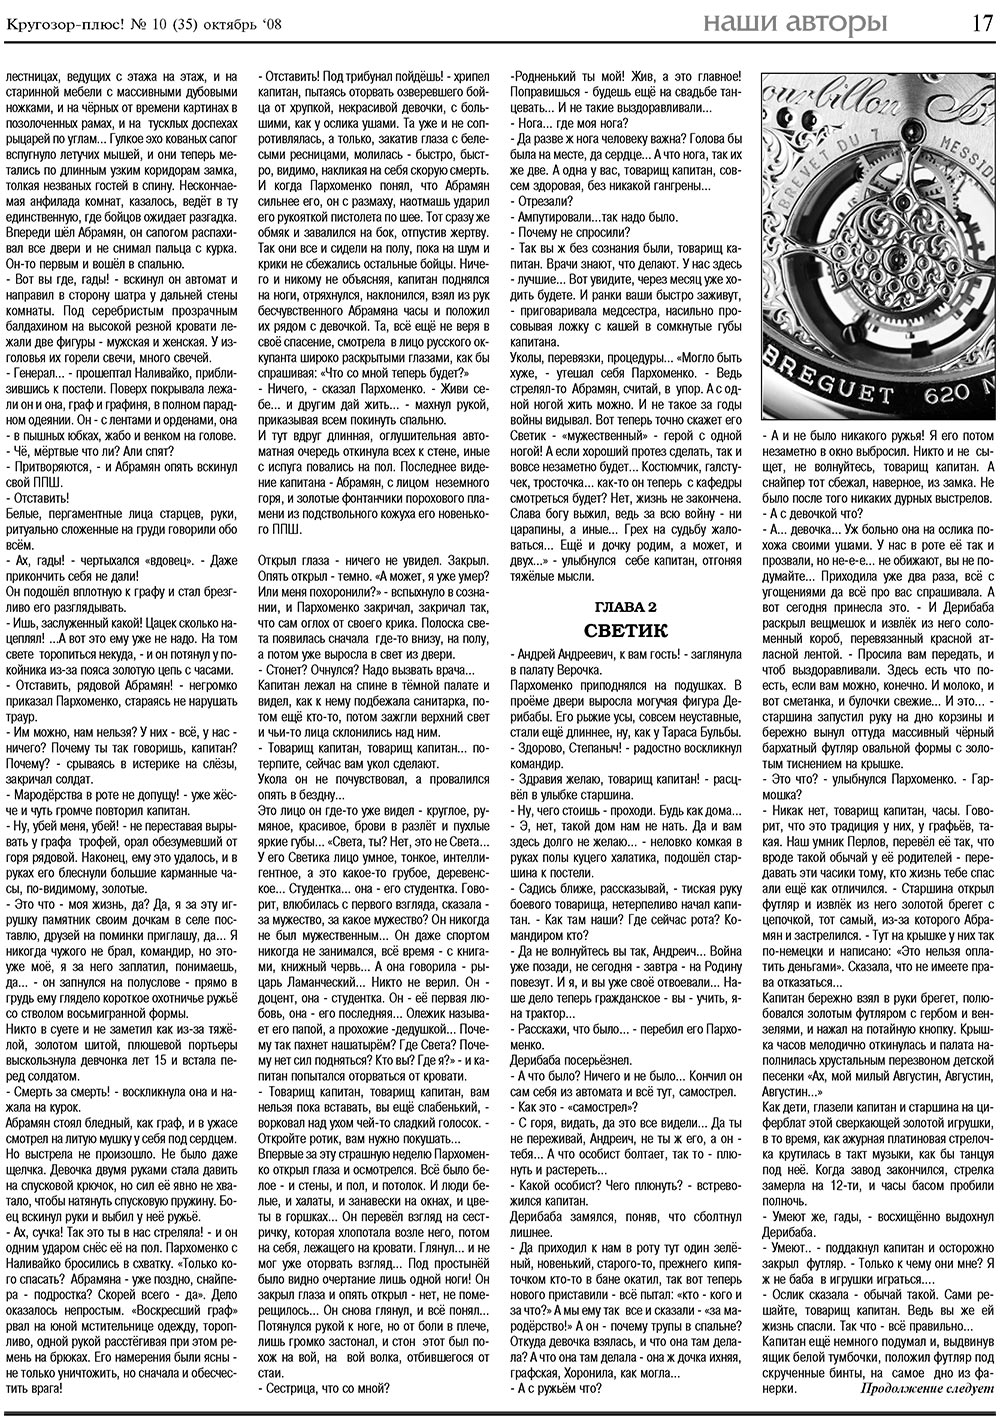 Кругозор плюс!, газета. 2008 №10 стр.17